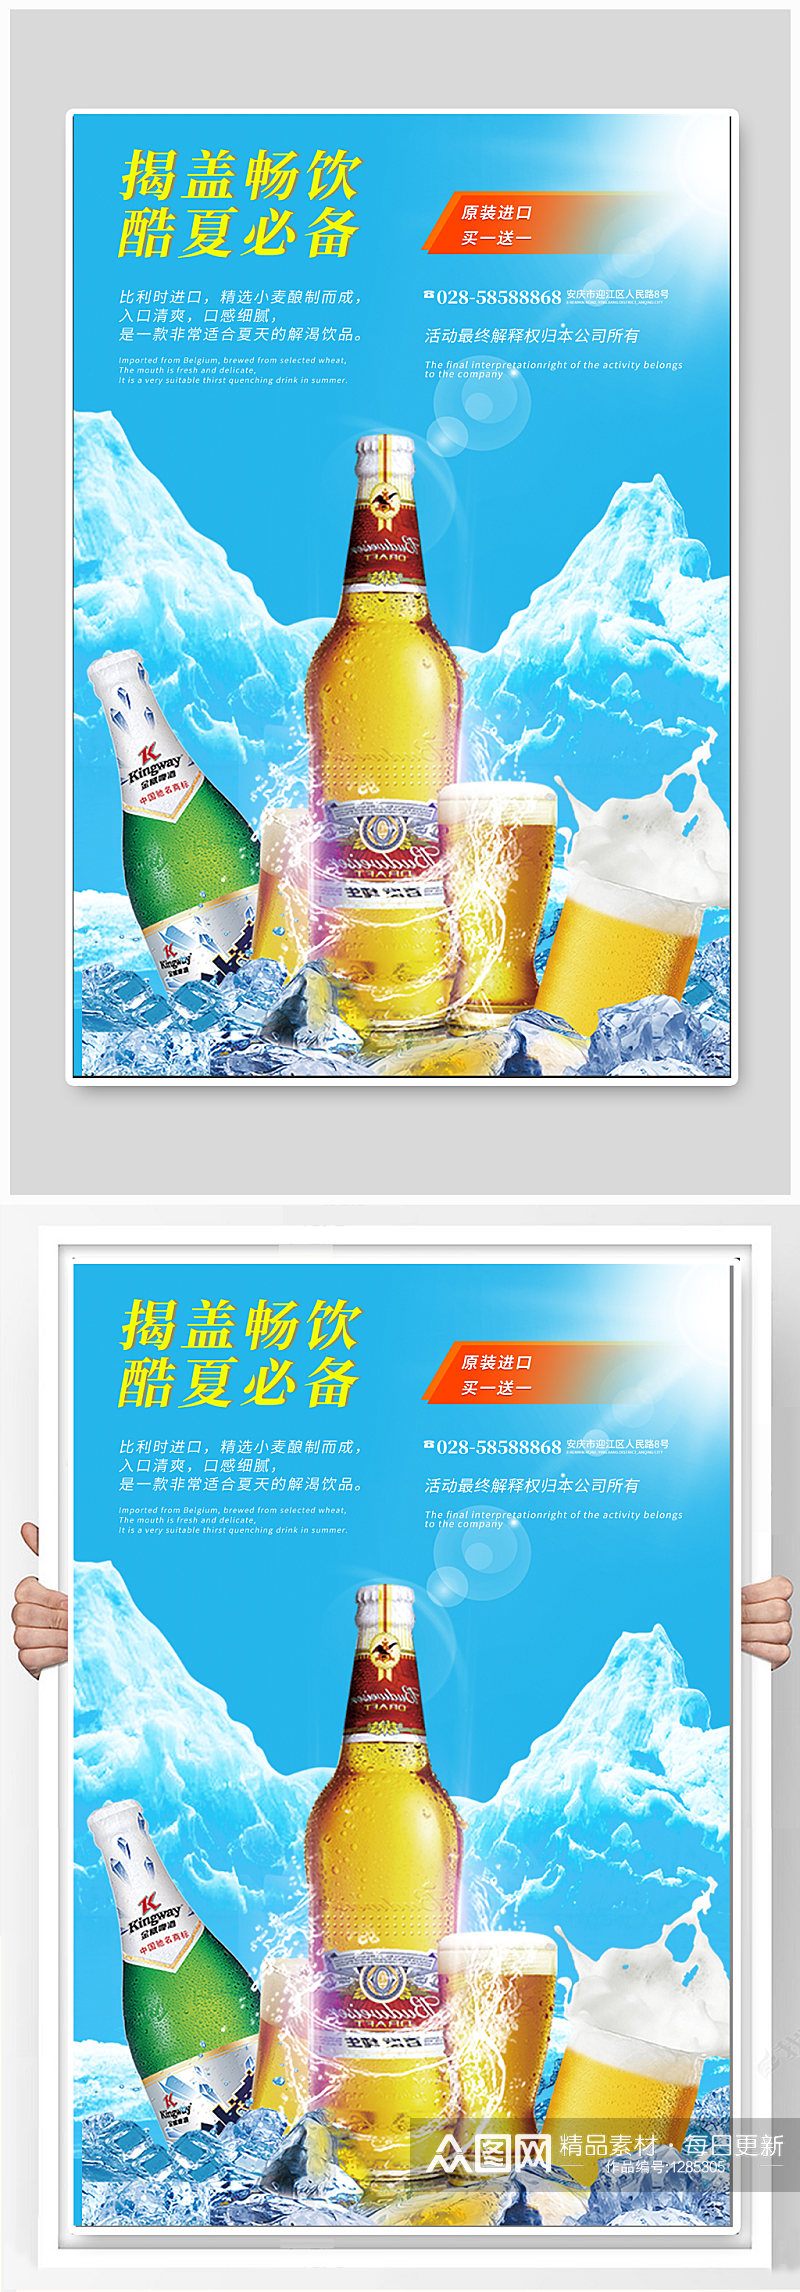 酷夏啤酒宣传海报素材